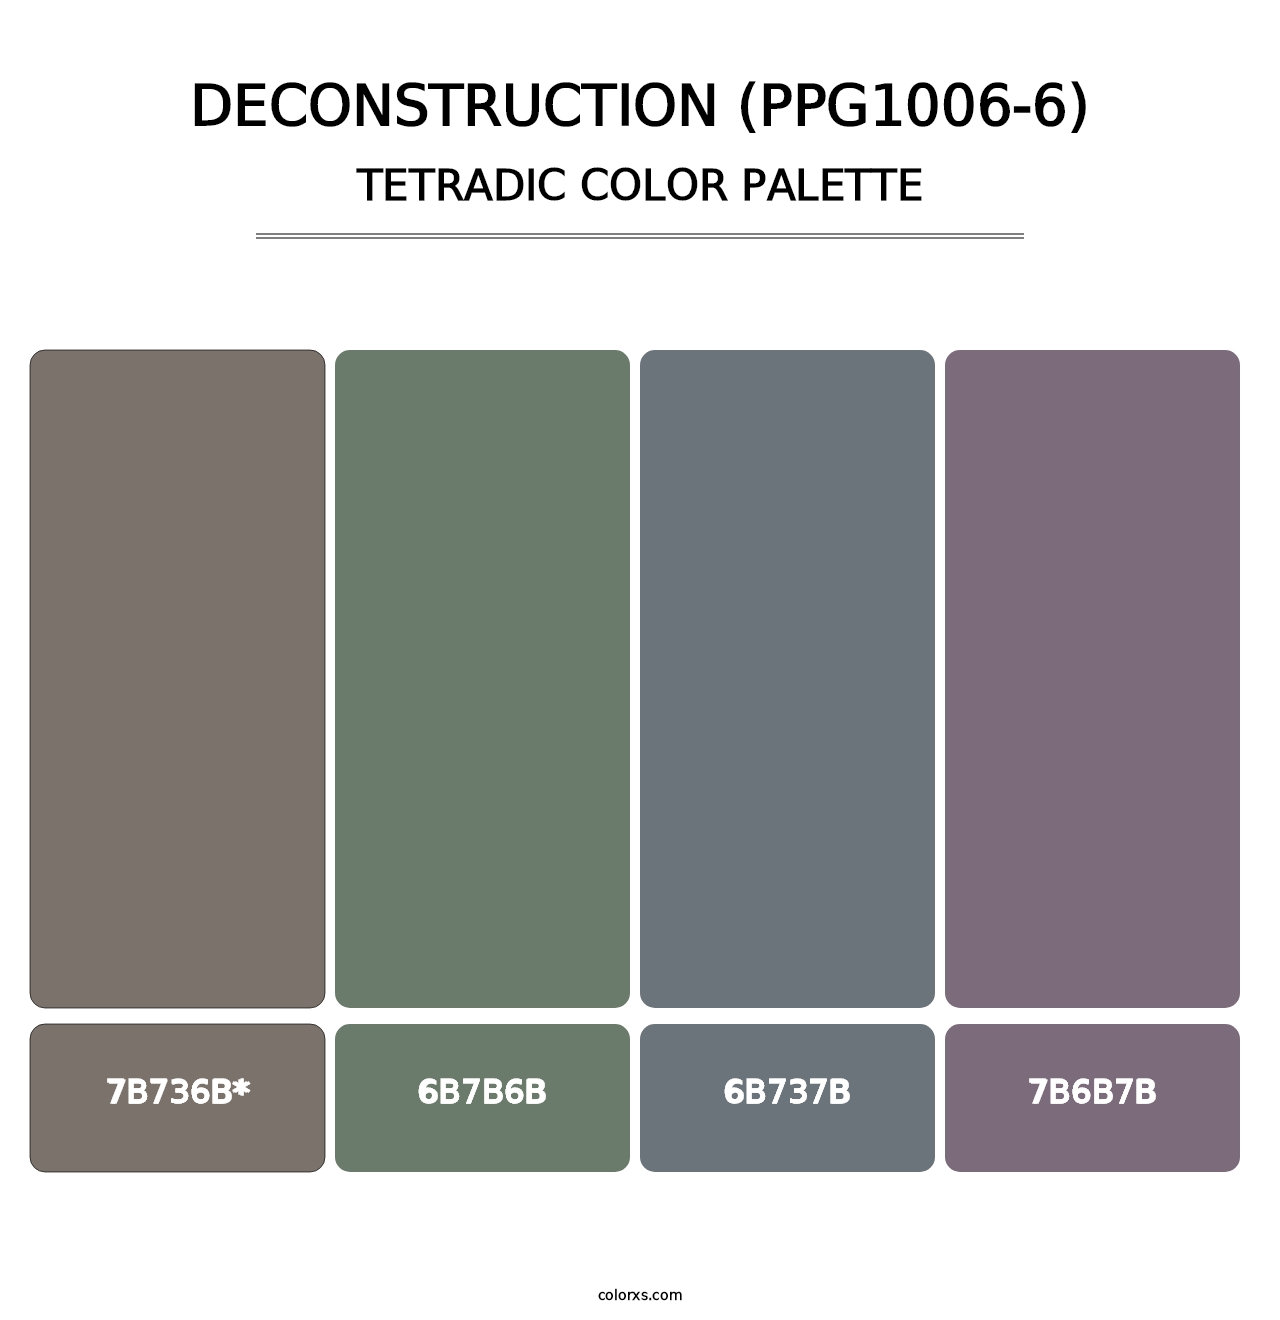 Deconstruction (PPG1006-6) - Tetradic Color Palette